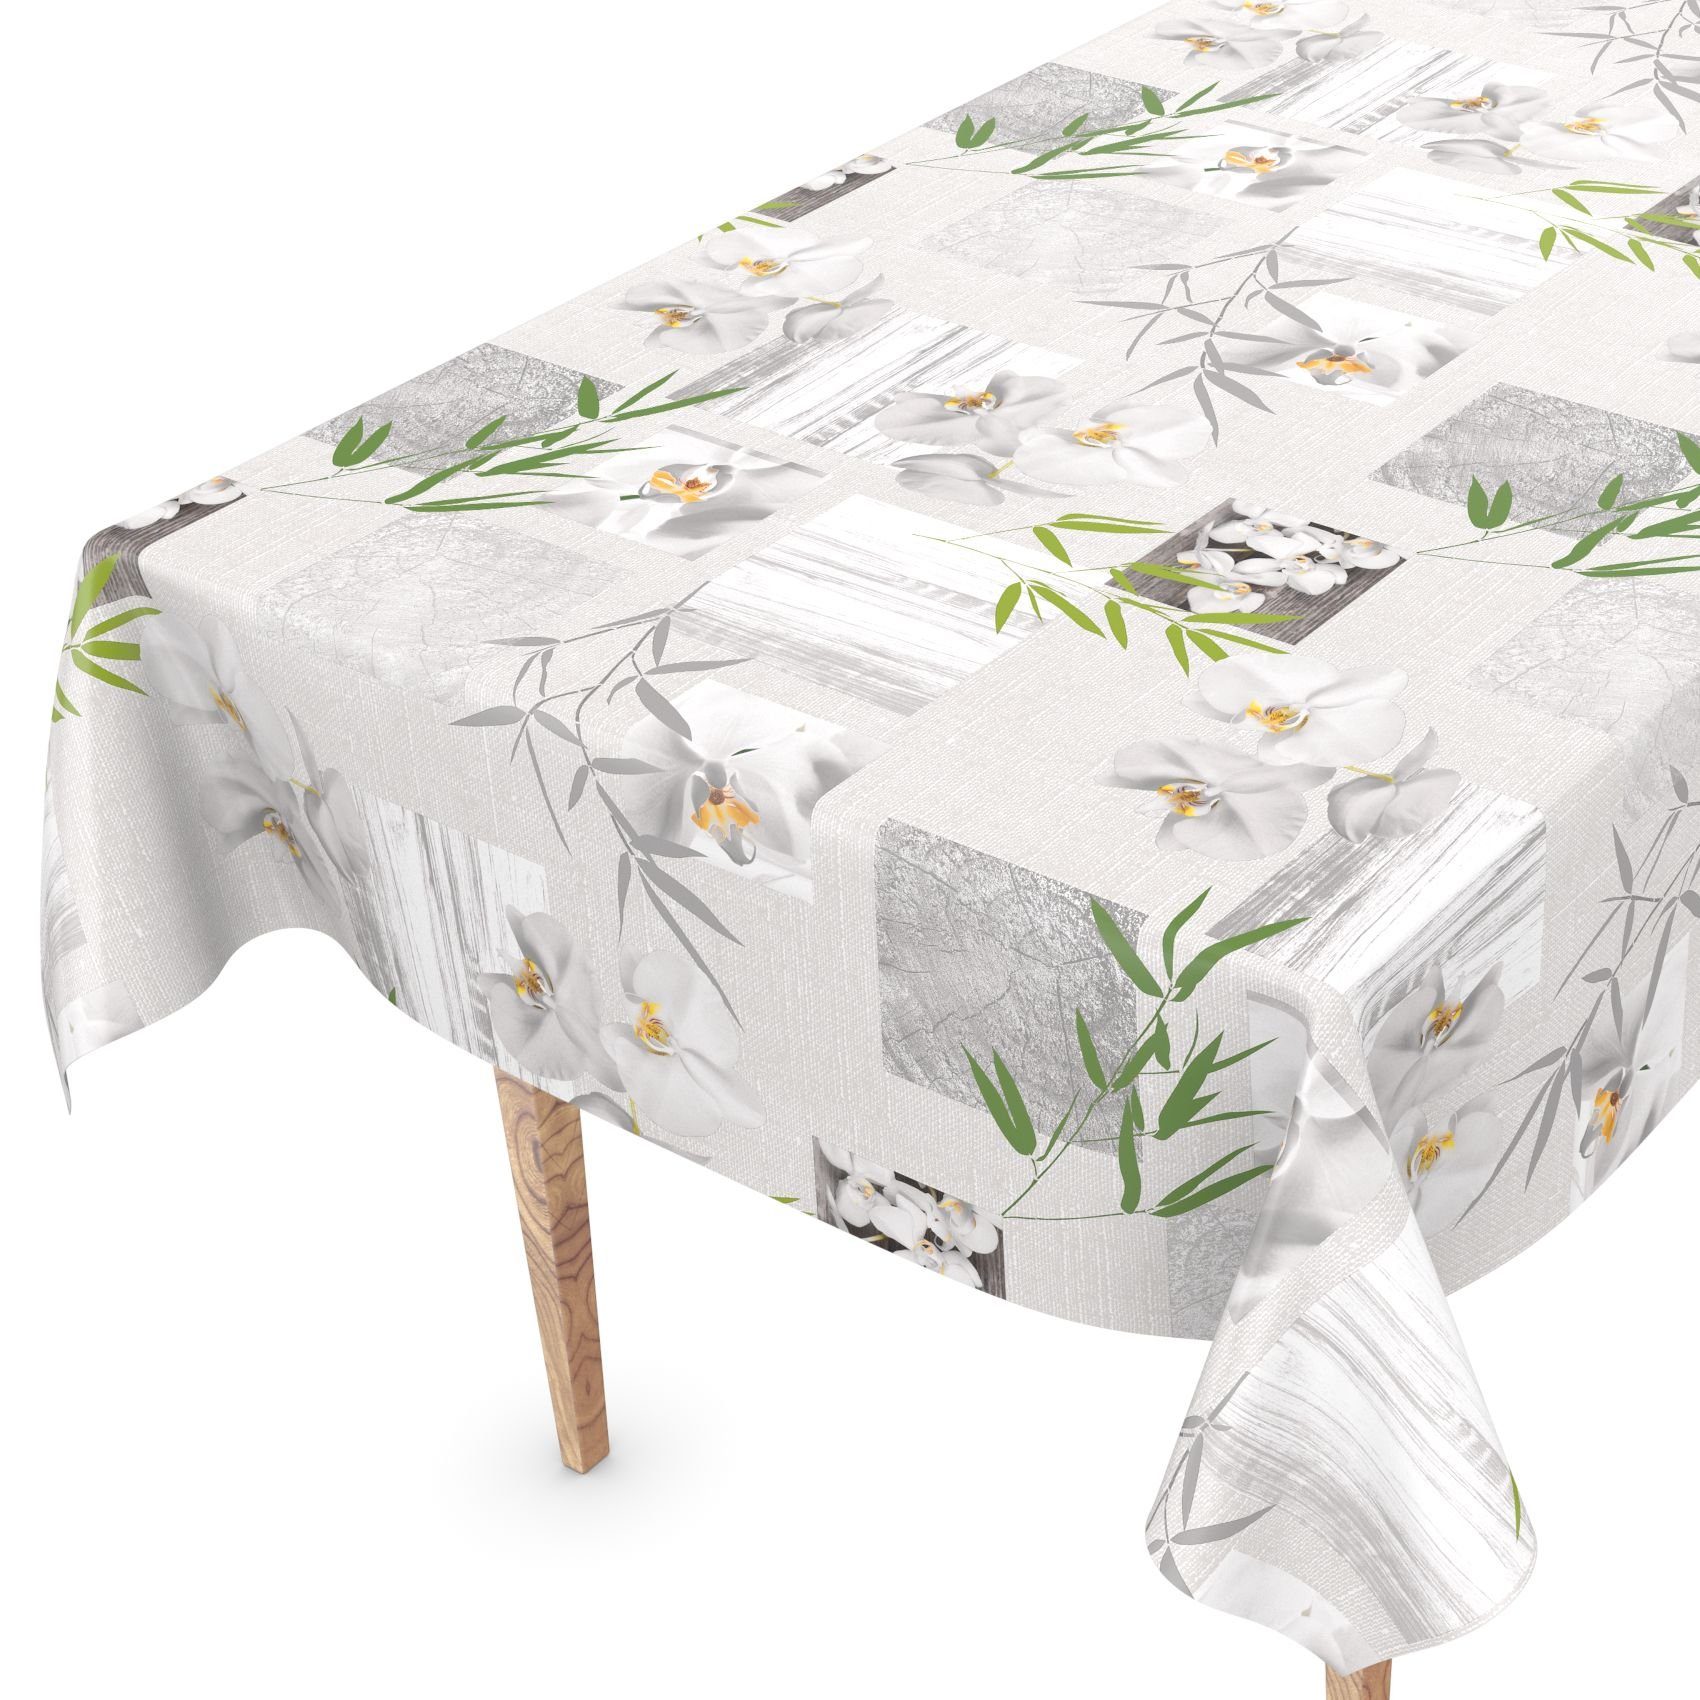 ANRO Tischdecke Tischdecke Wachstuch Blumen Grau Robust Wasserabweisend Breite 140 cm, Glatt